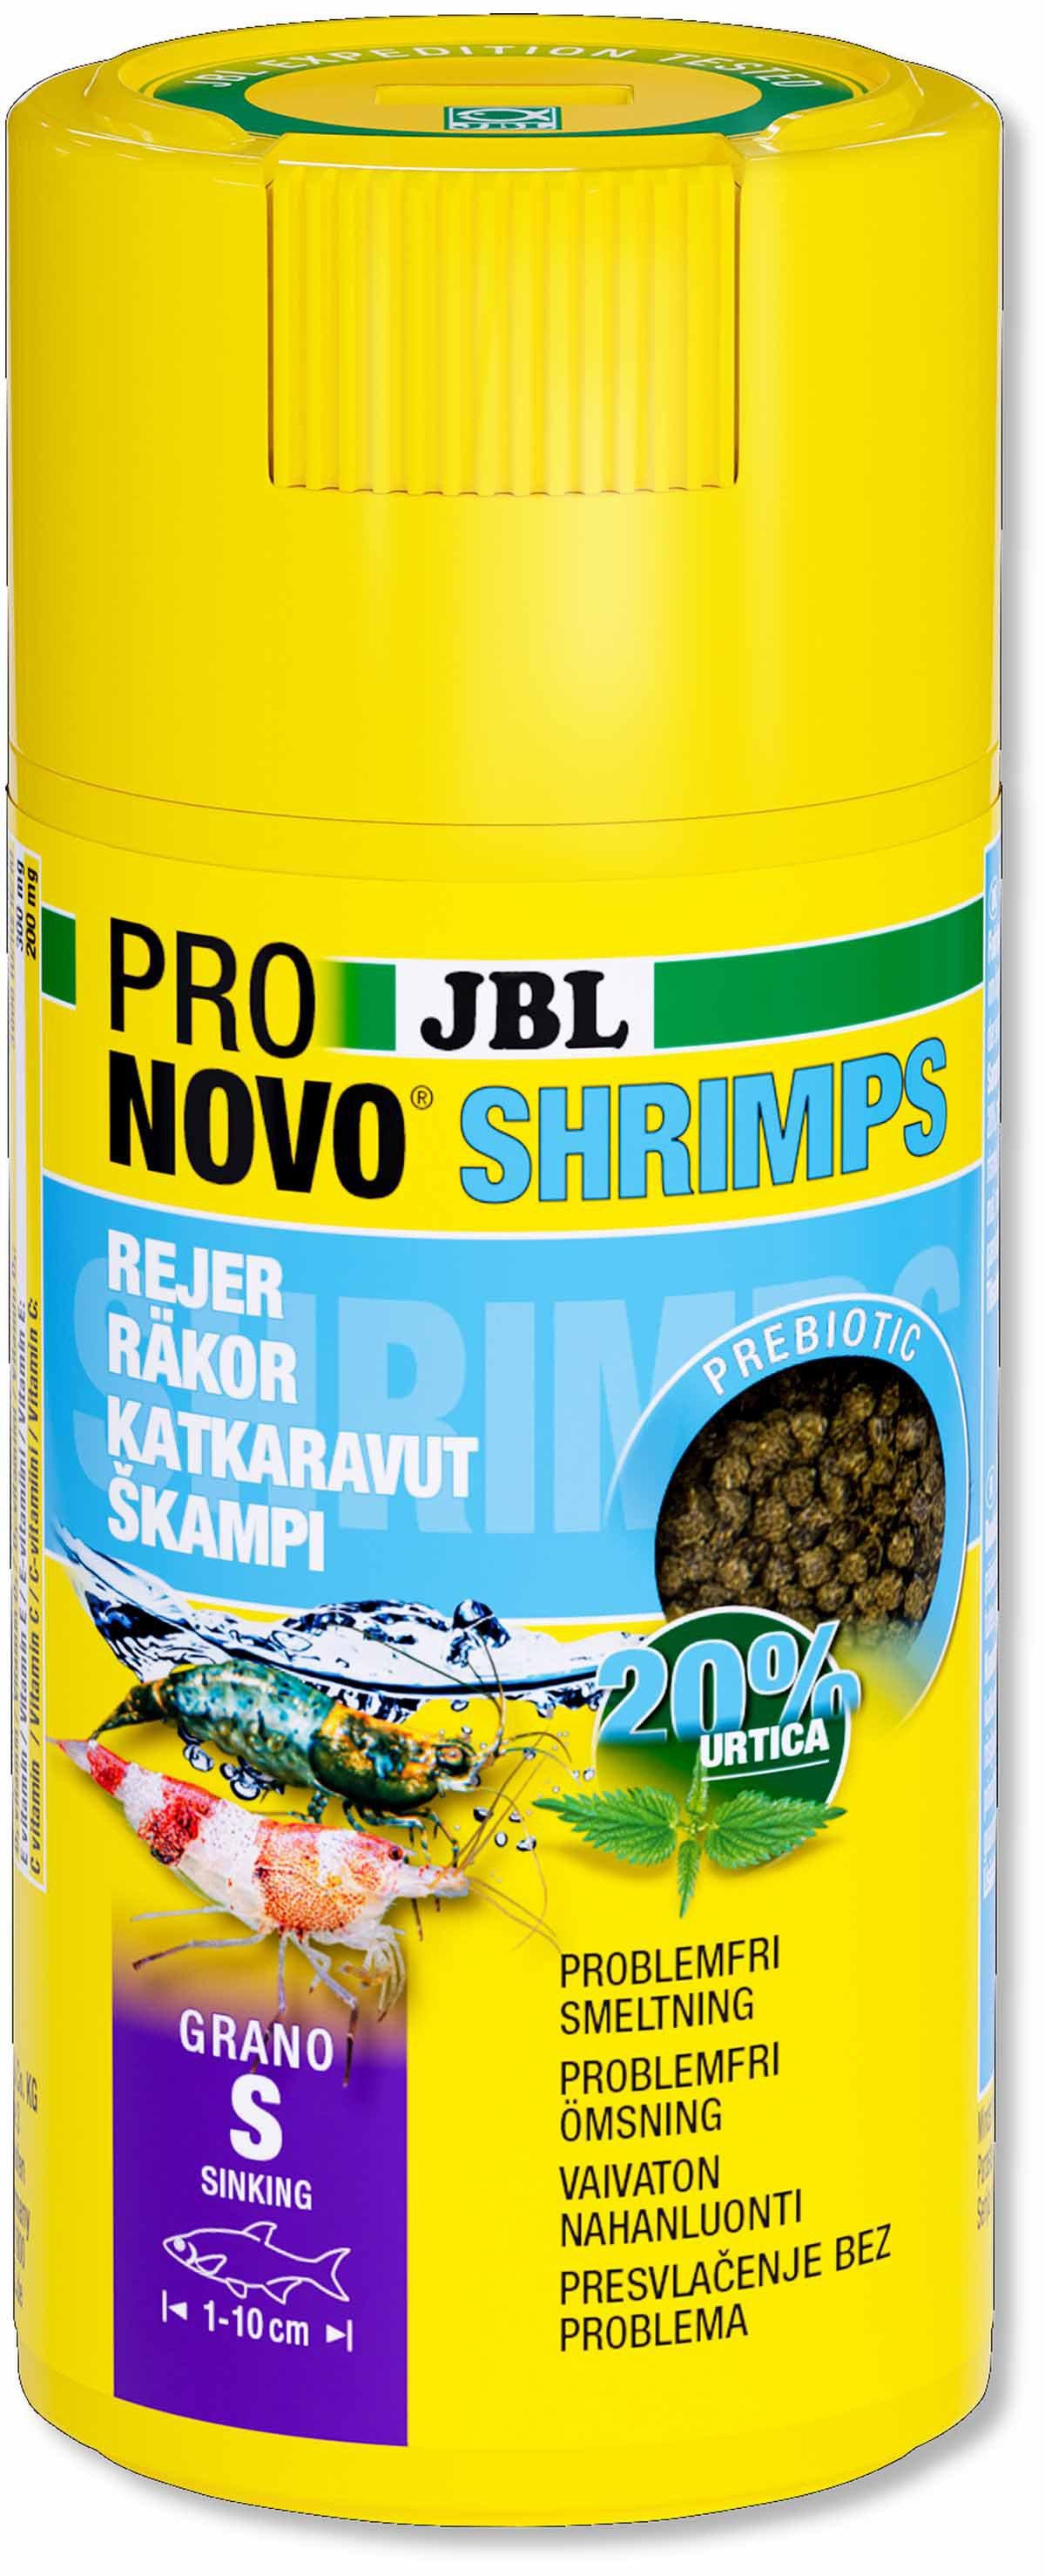 JBL - Pronovo Shrimps Grano S 250ml Click - (152.1016)